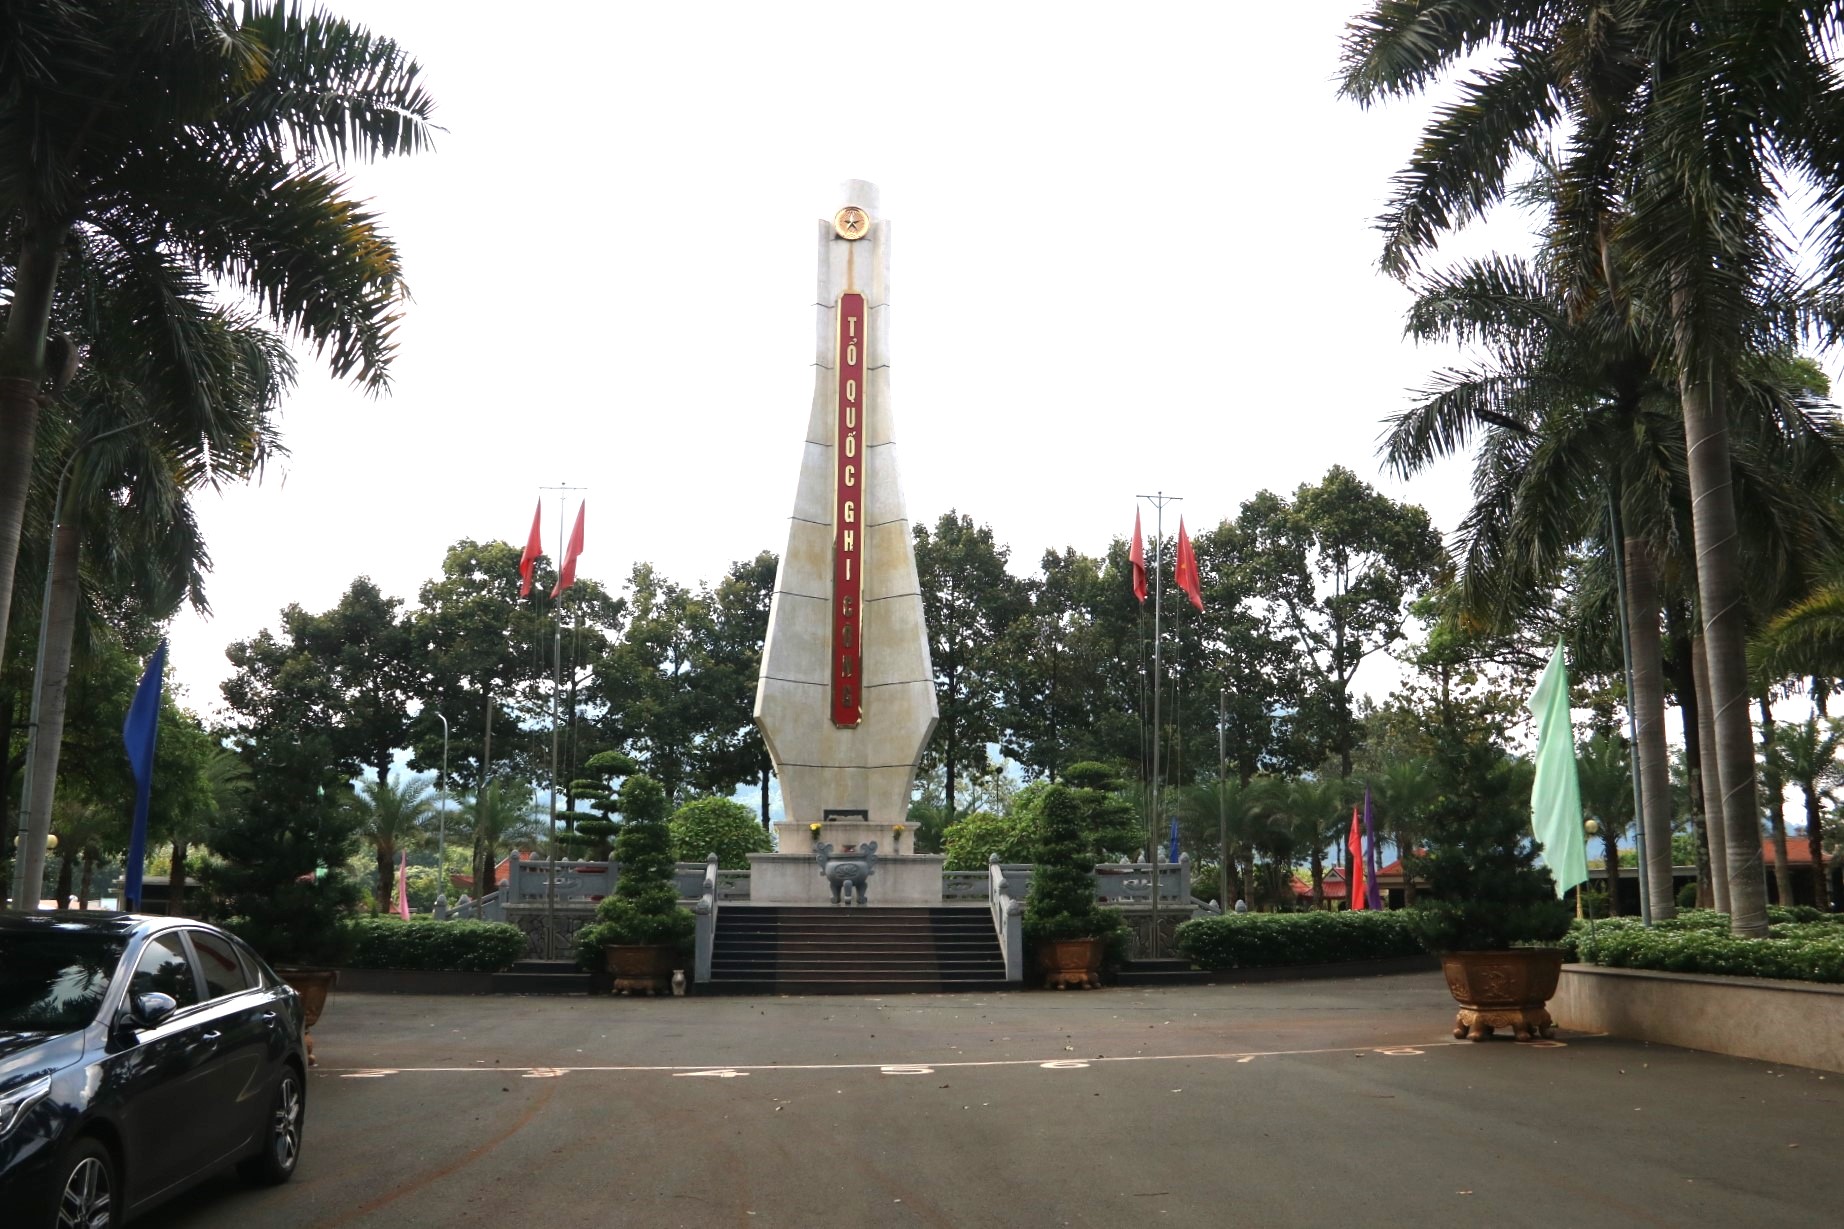 Đây là Nghĩa trang Liệt sĩ thị xã Phước Long dưới chân núi Bà Rá (thị xã Phước Long, tỉnh Bình Phước).